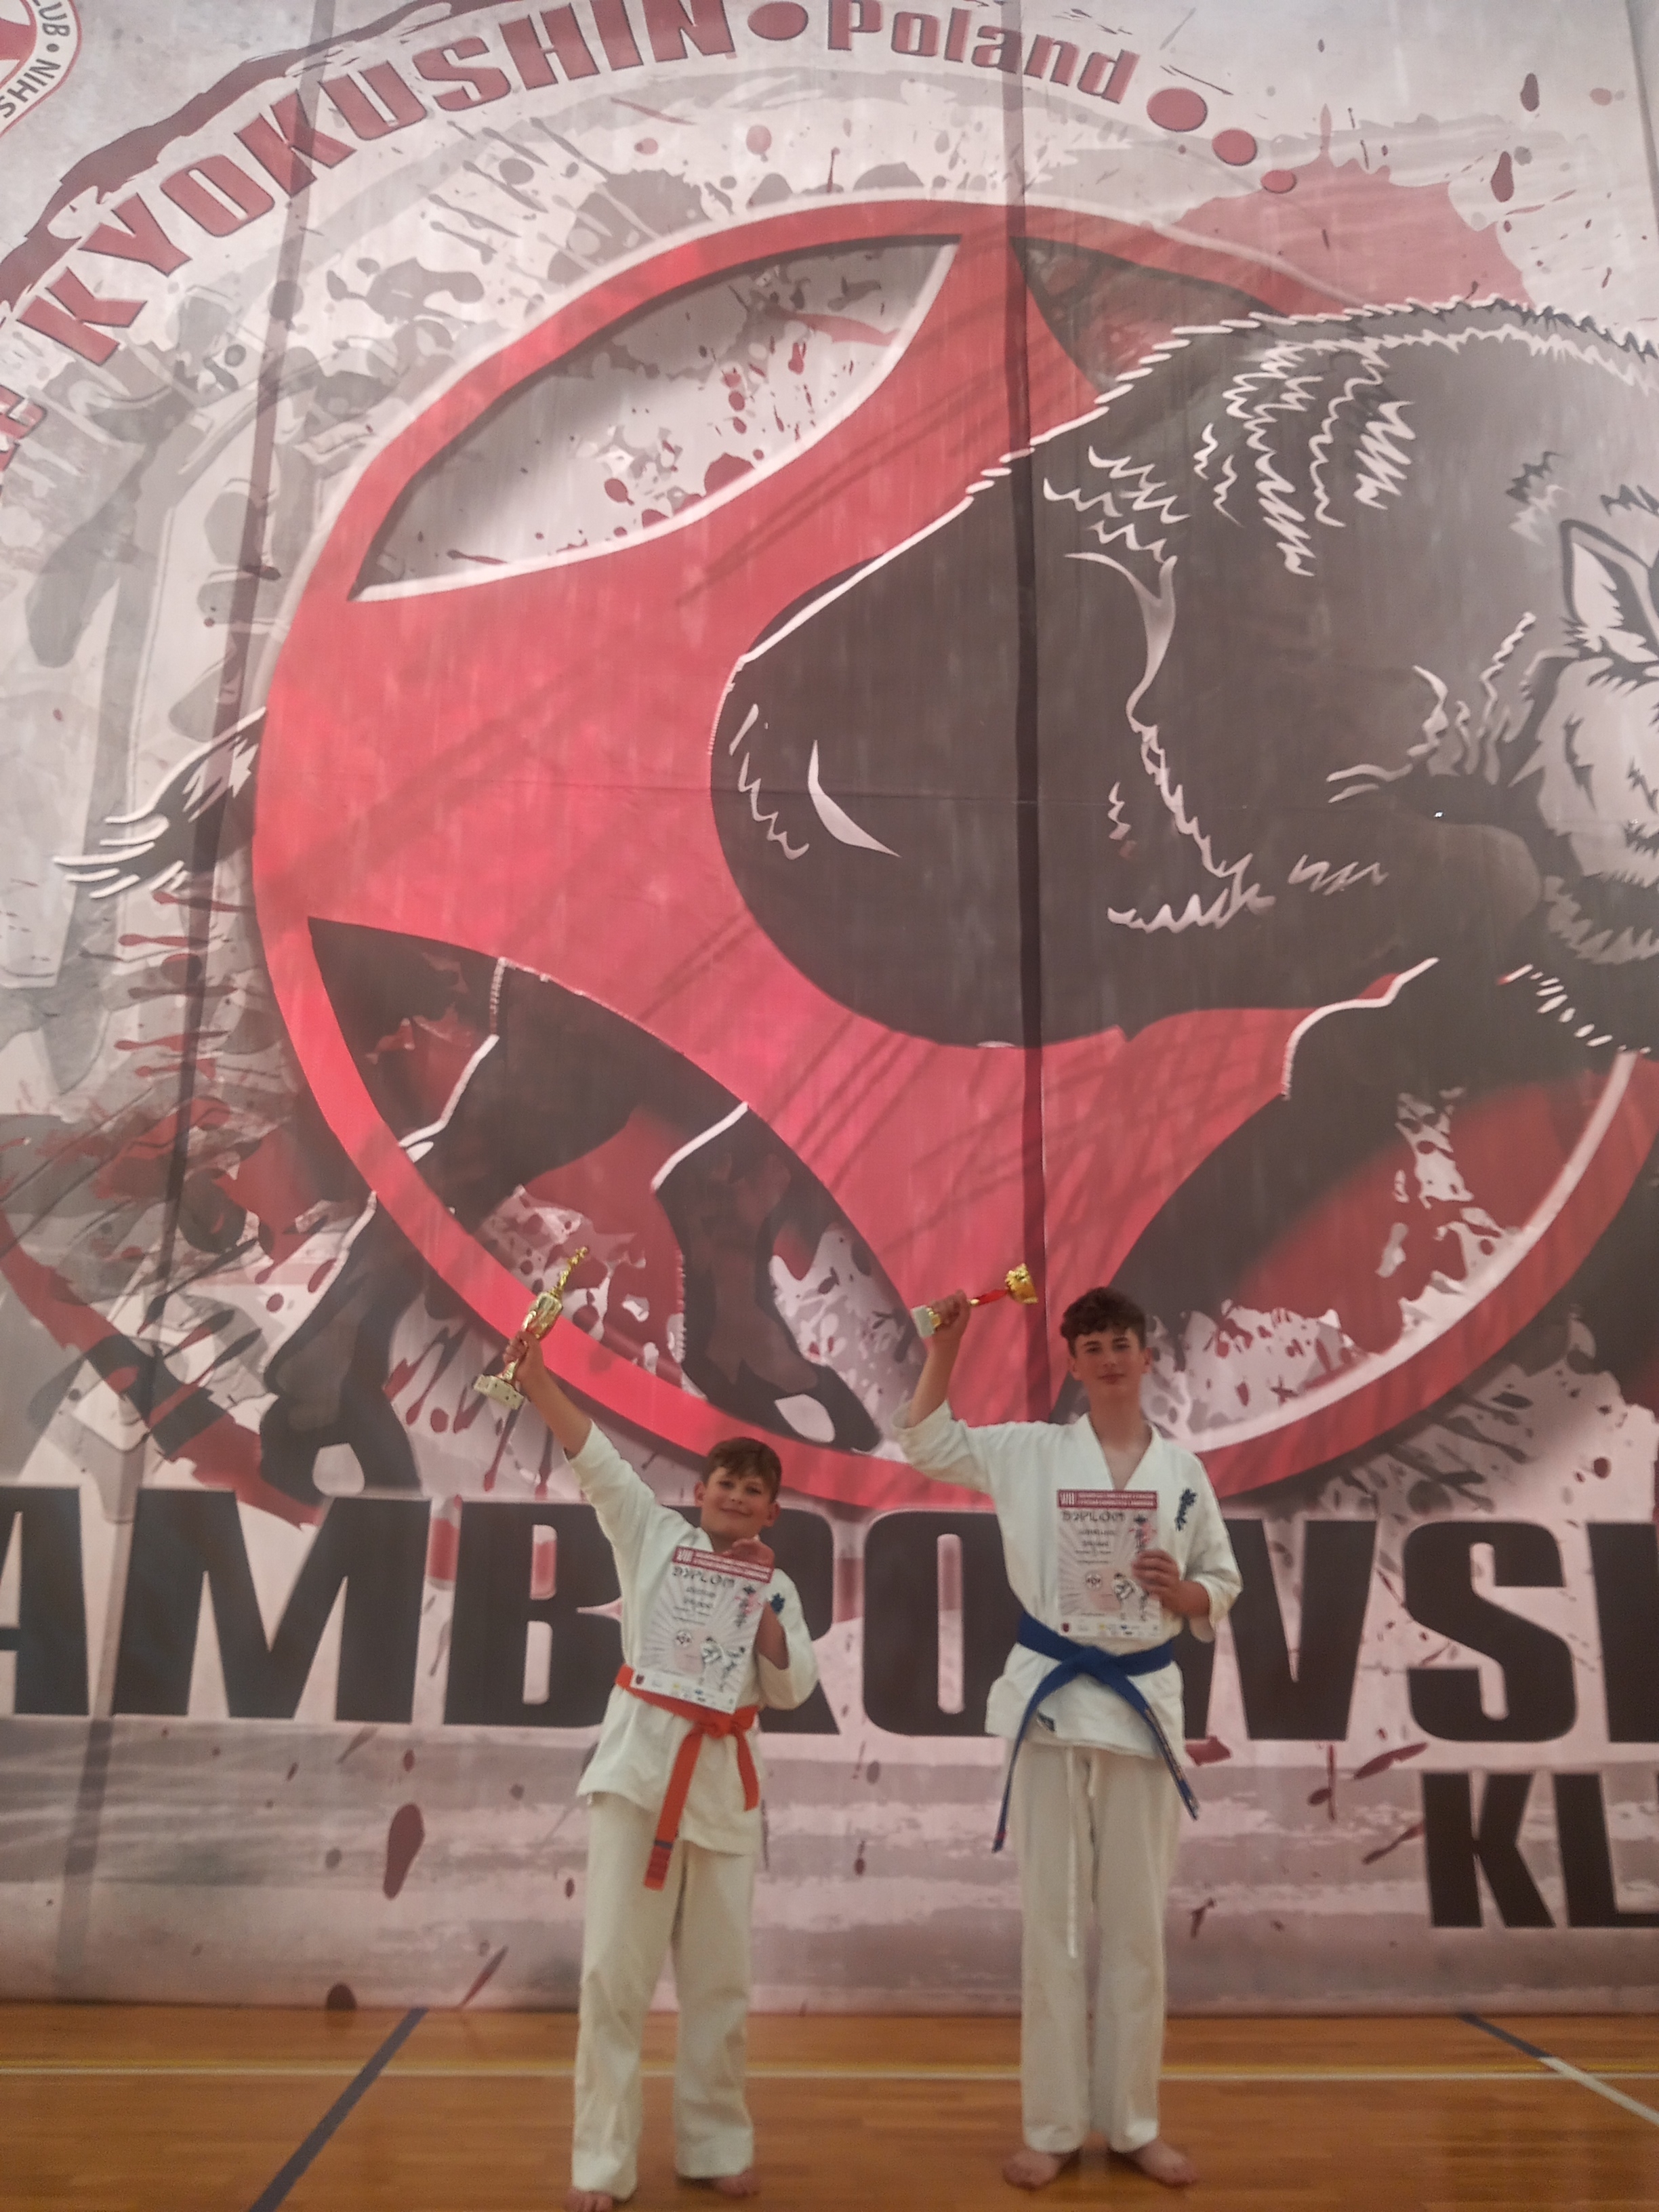 Zawody karate w Zambrowie